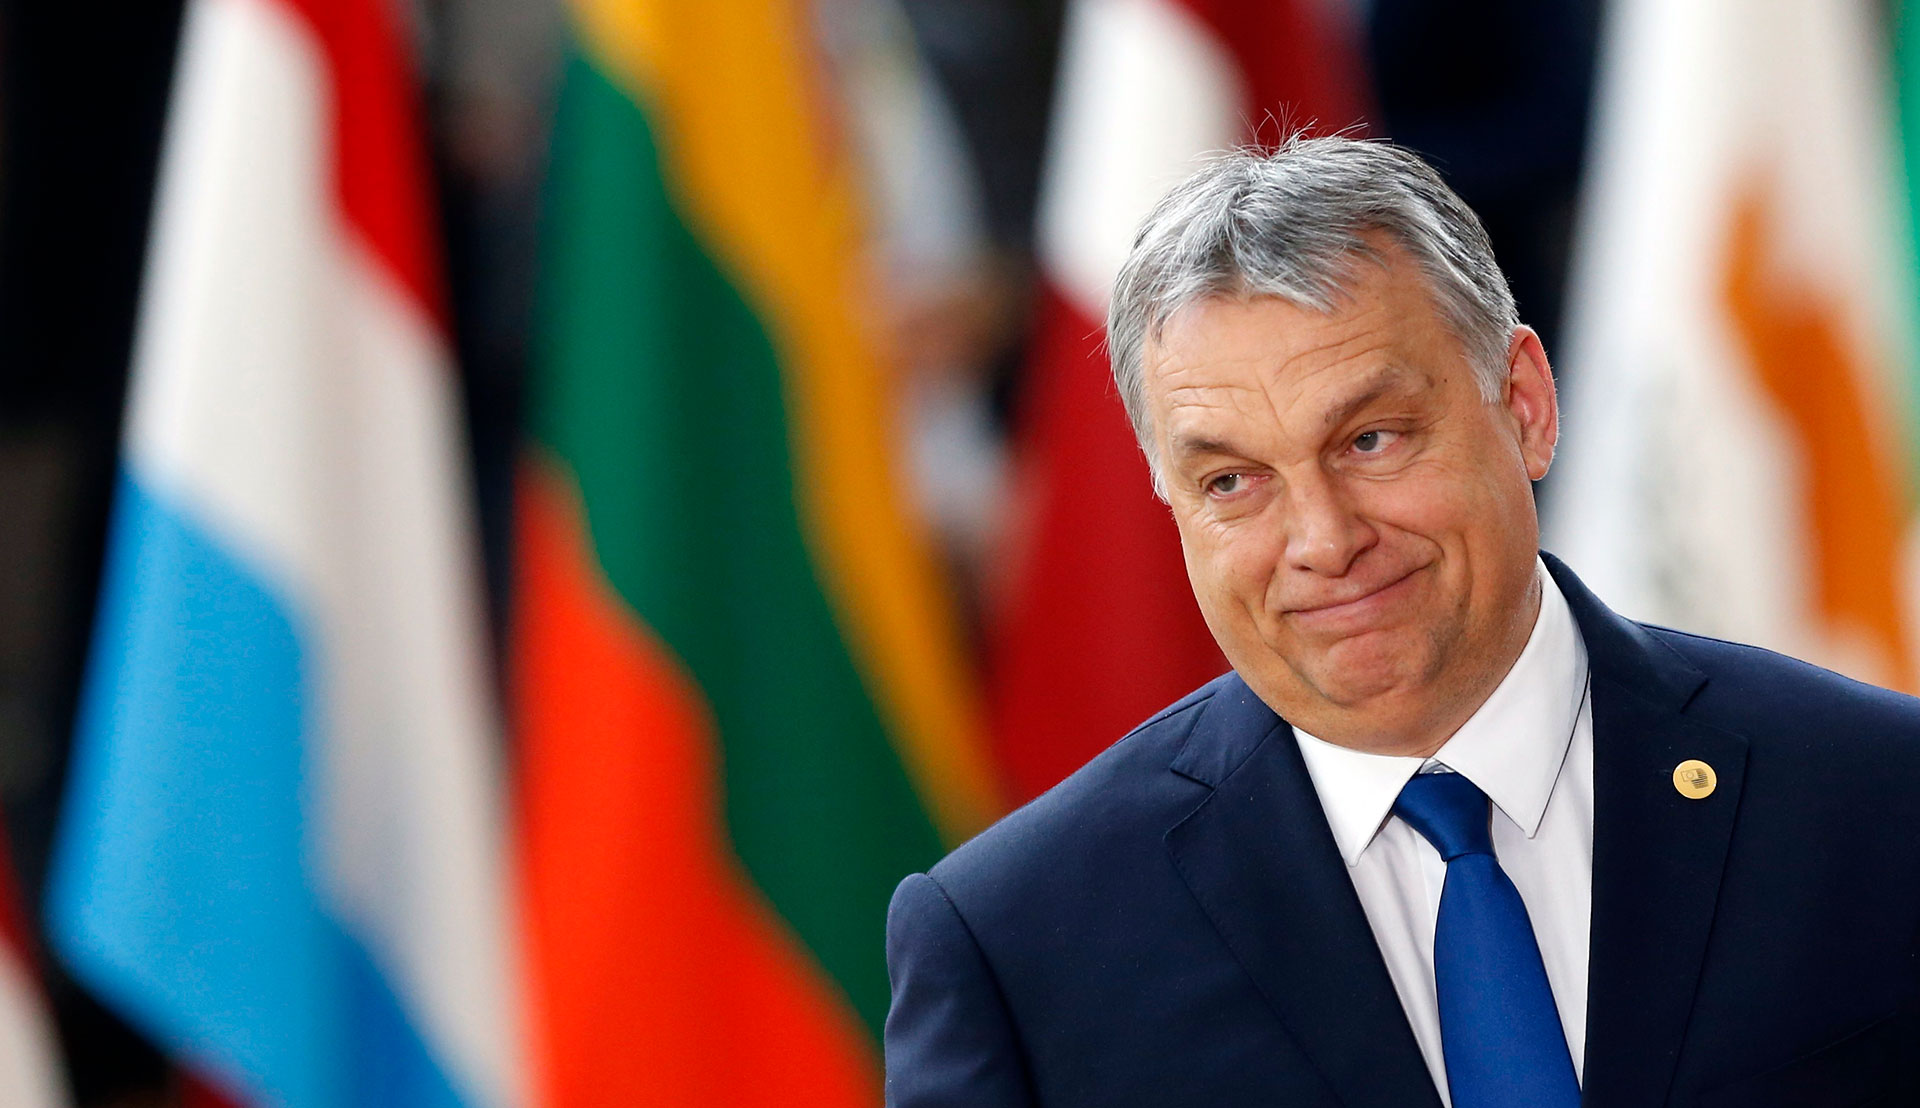 Παράθυρο συνεργασίας ανοίγει η Ουγγαρία - Ο συμβιβασμός και οι ευρωπαϊκές απειλές